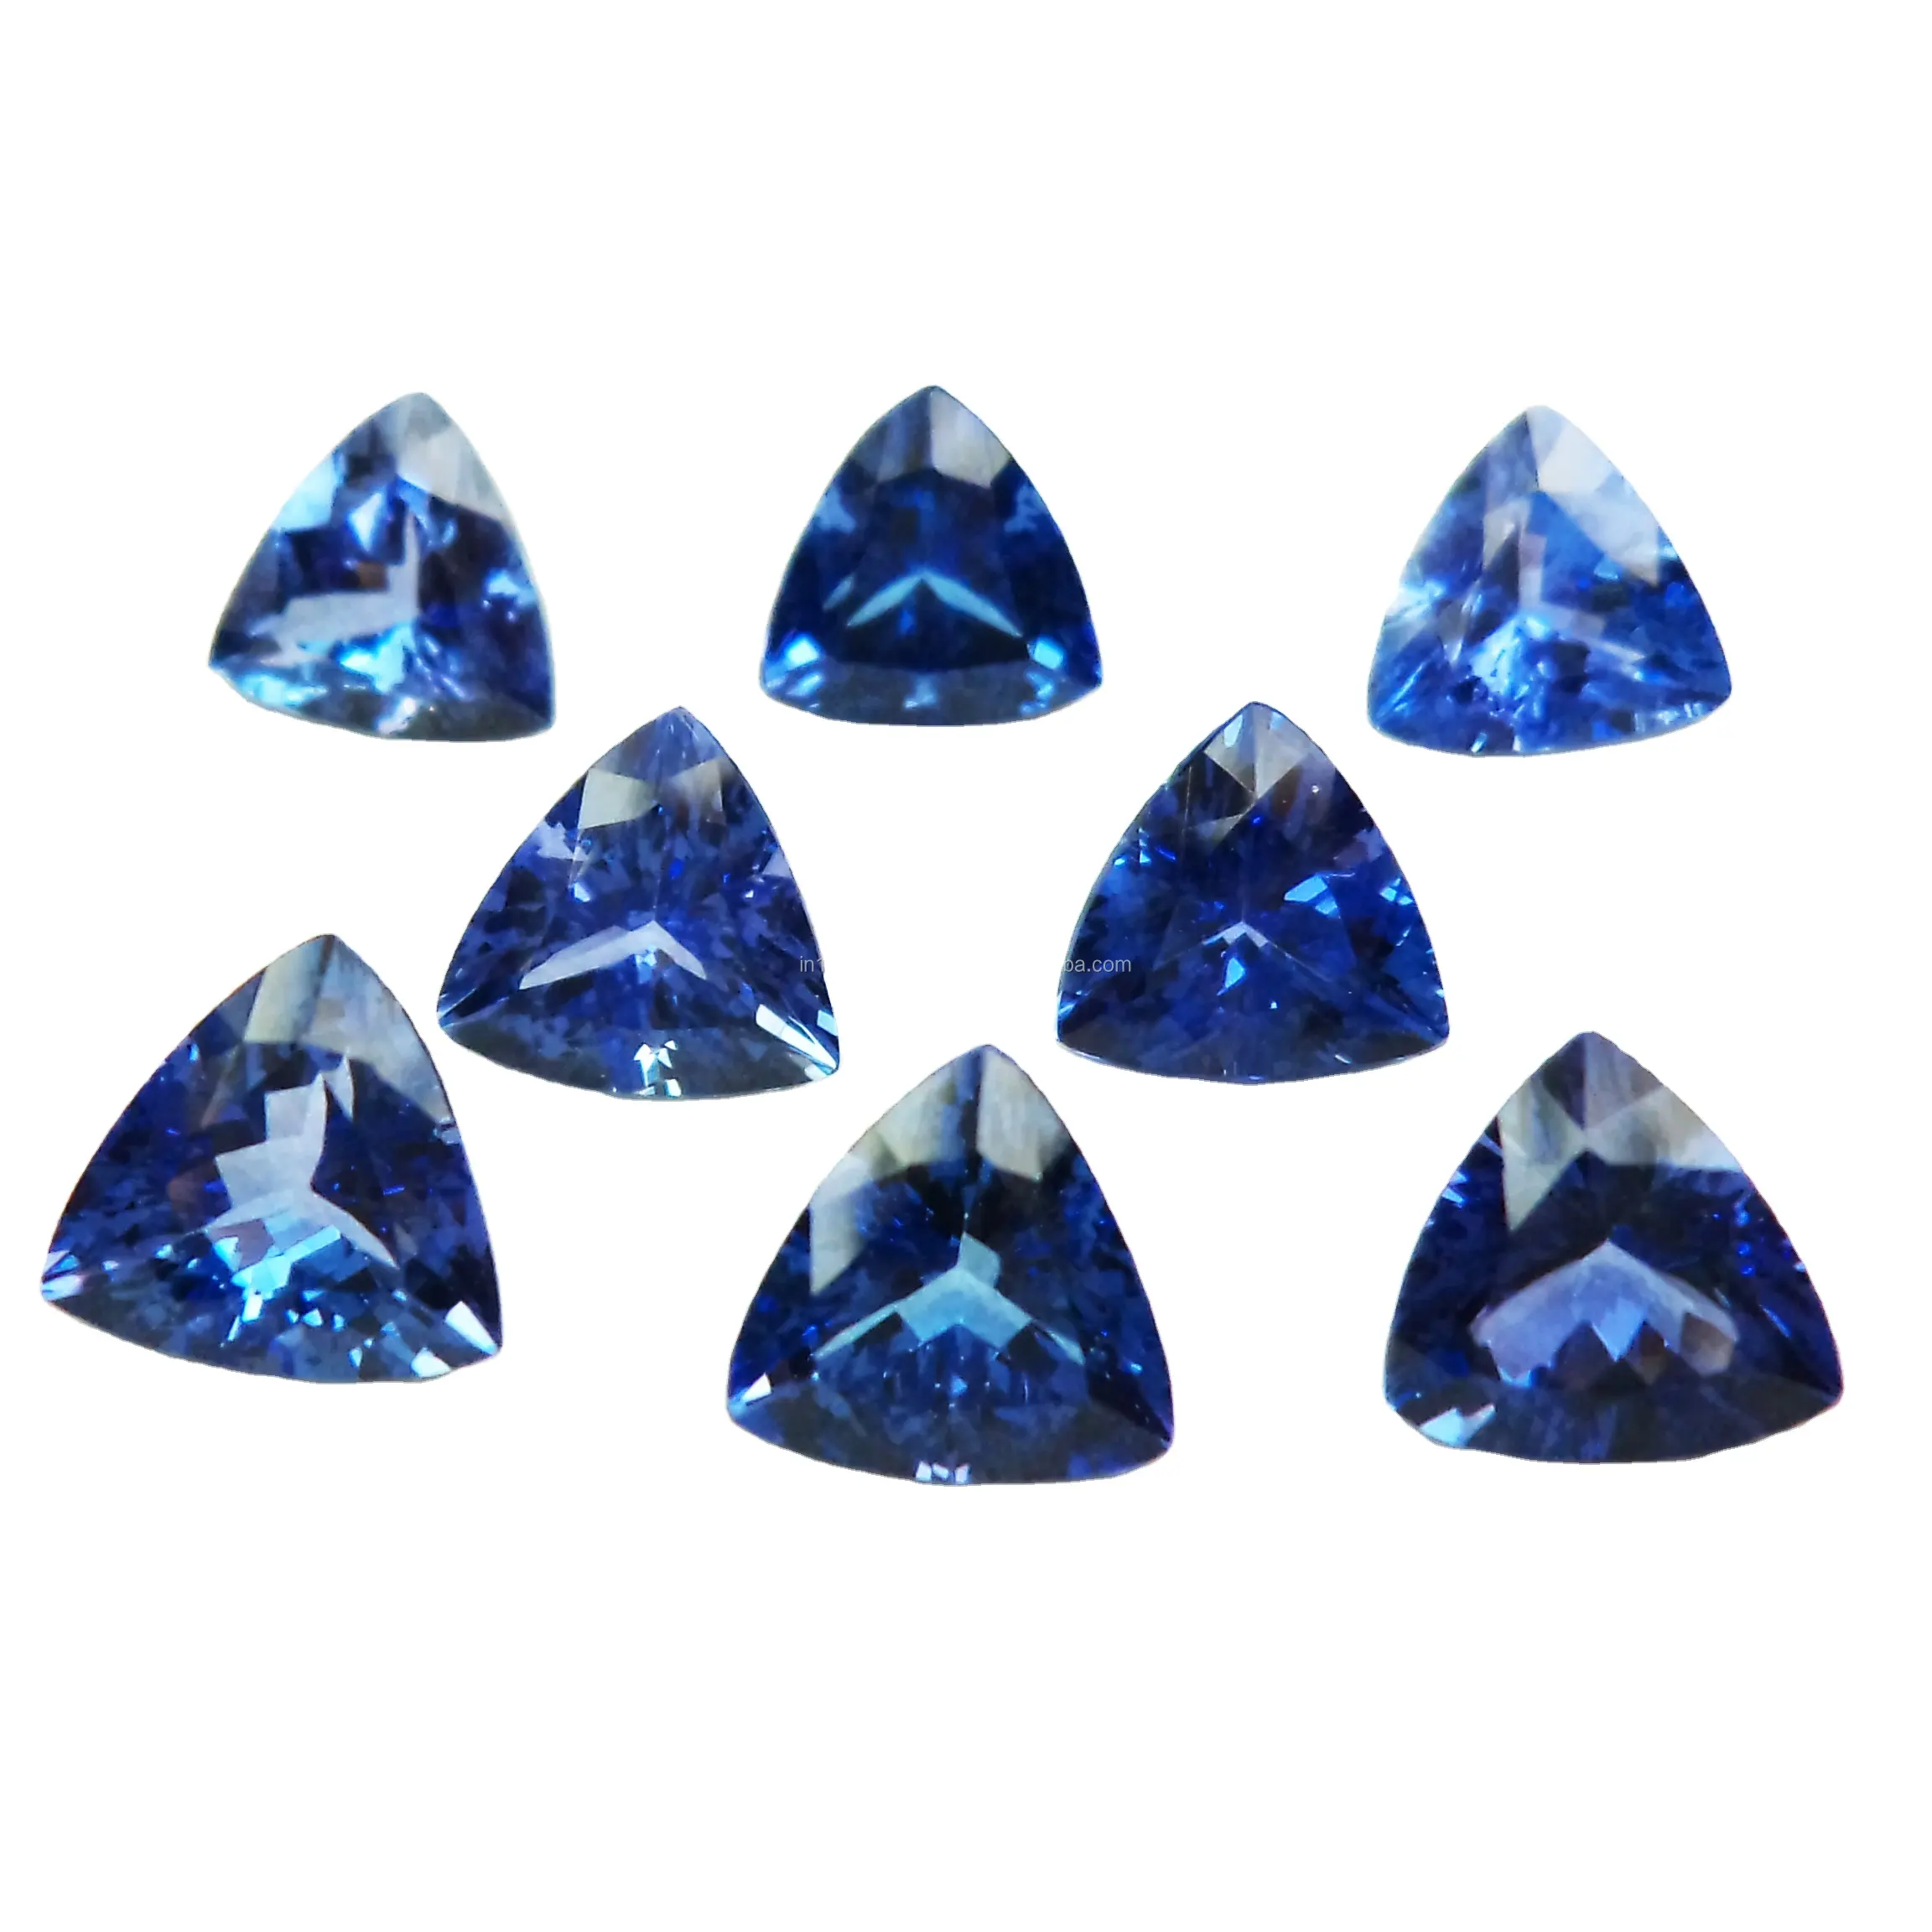 8x8 мм, граненый натуральный Танзанит в форме триллиона из Индии, свободный синий драгоценный камень высшего качества, драгоценный триллион, ограненный камень, танзанит